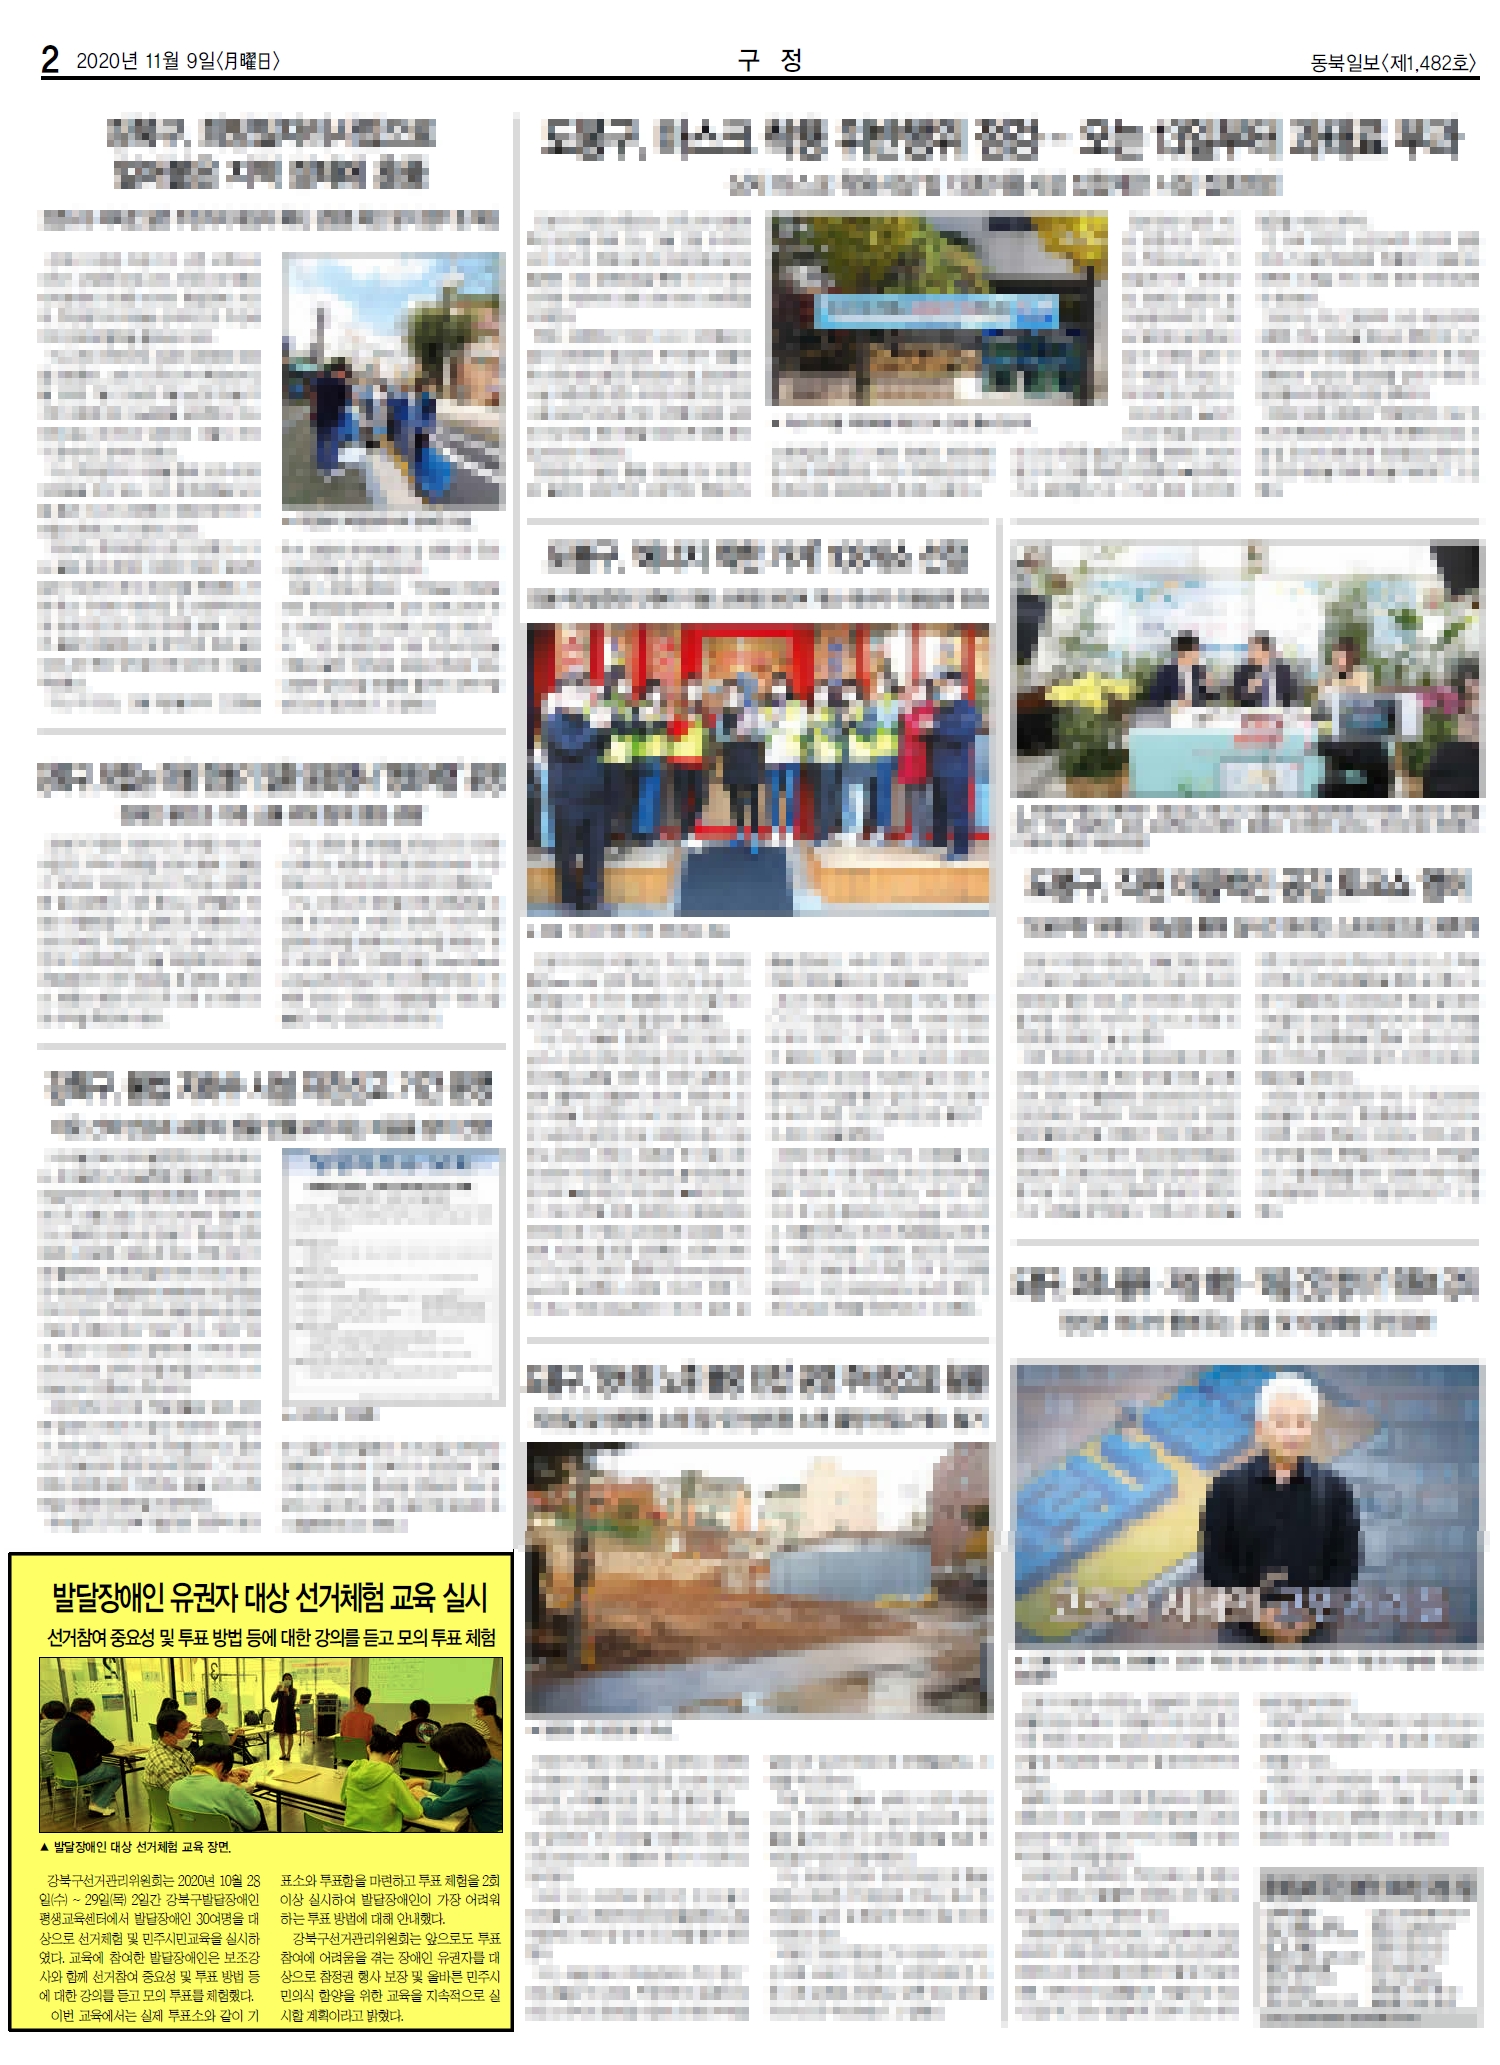 강북구선거관리위원회는 발달장애인 유권자 대상 선거체험 및 민주시민교육 실시 보도자료를 동북신문에 지면 게재하였습니다.